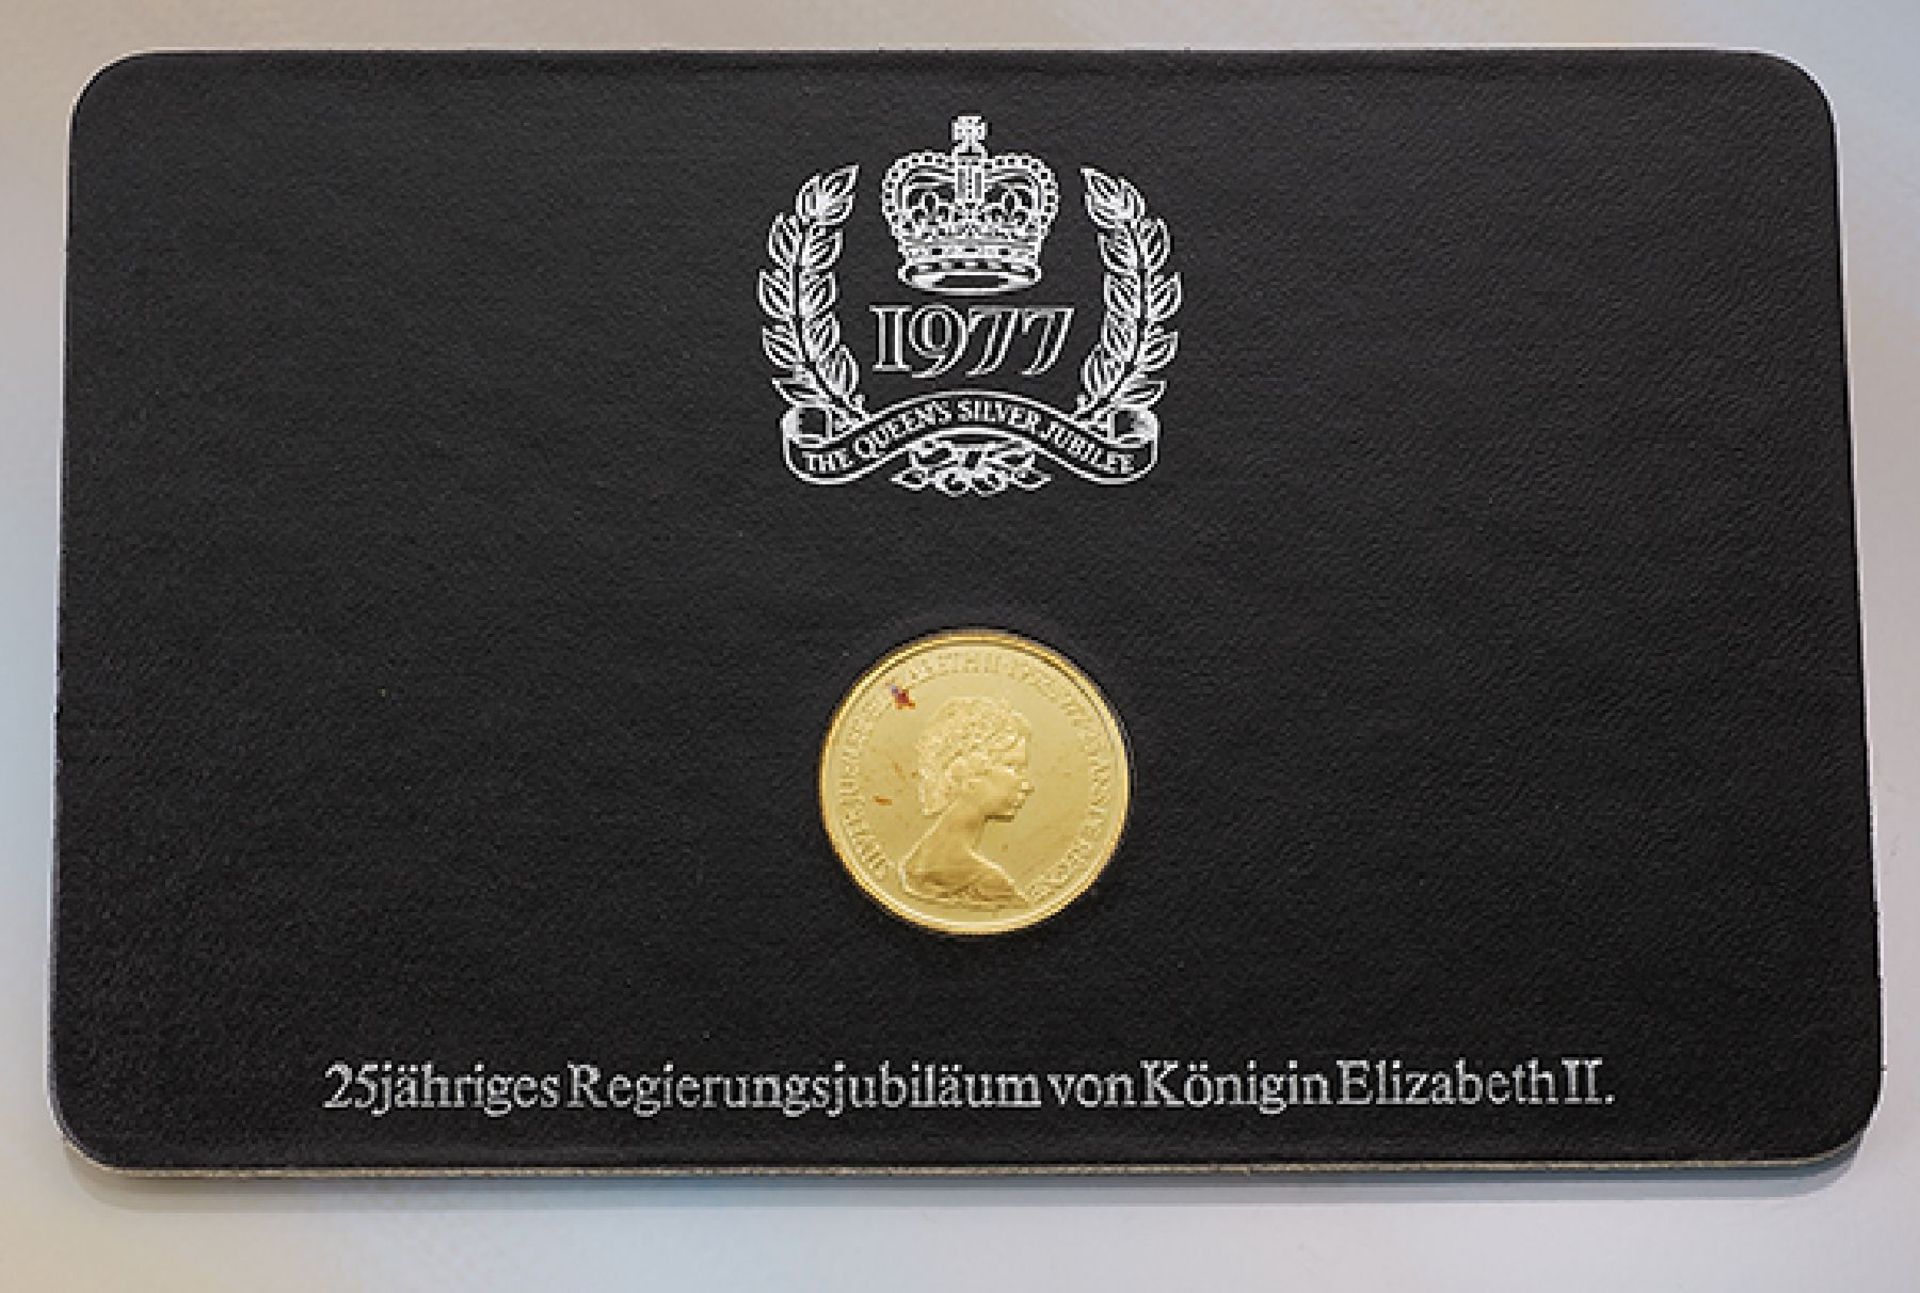 Goldmünze, 100 Dollars, Kanada, 1977, zum Gedenken an das 25jährige Regierungsjubiläum von Königin